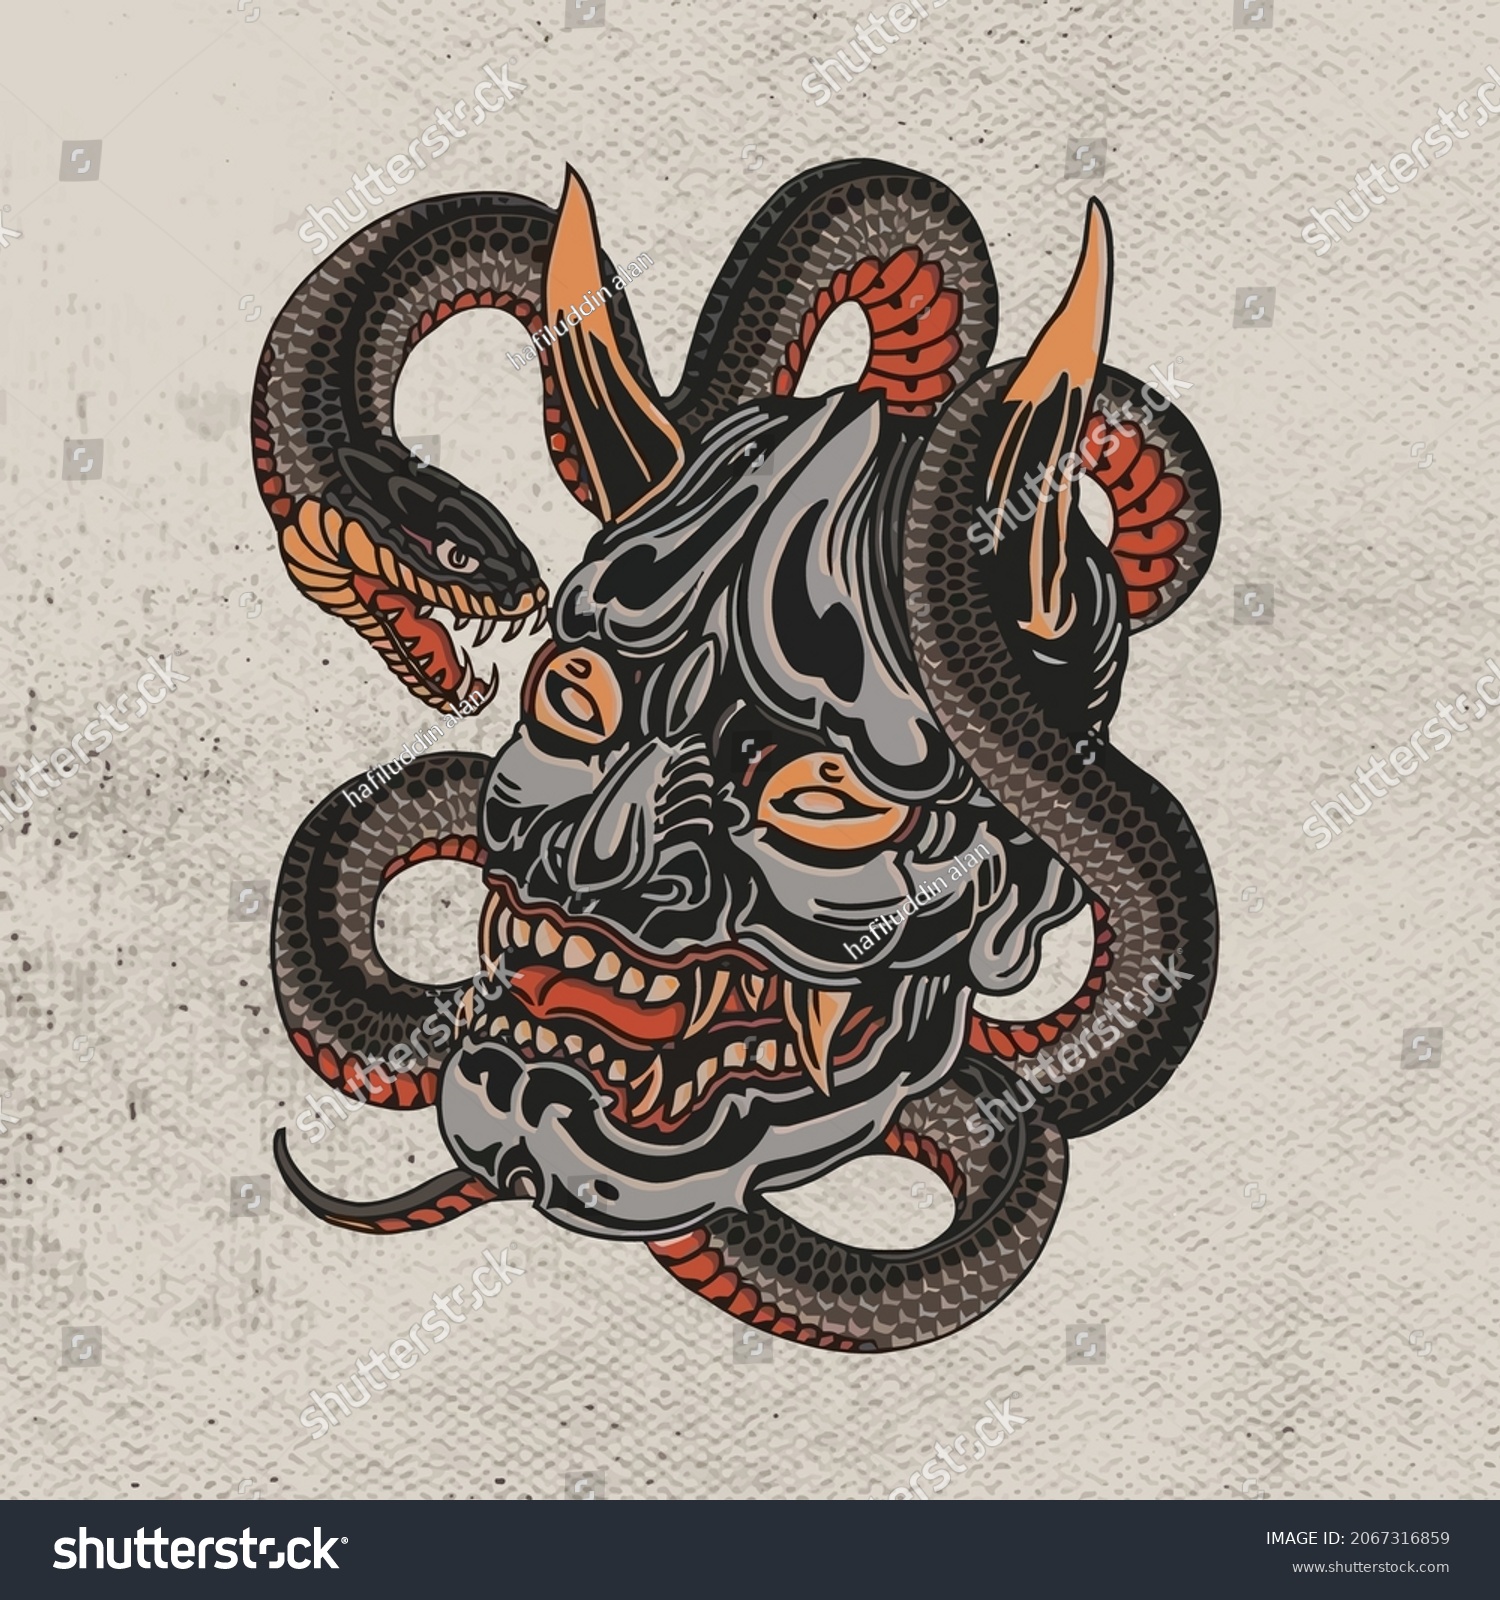 SVG of devil head and black cobra snake for tattoo or t-shirt design svg